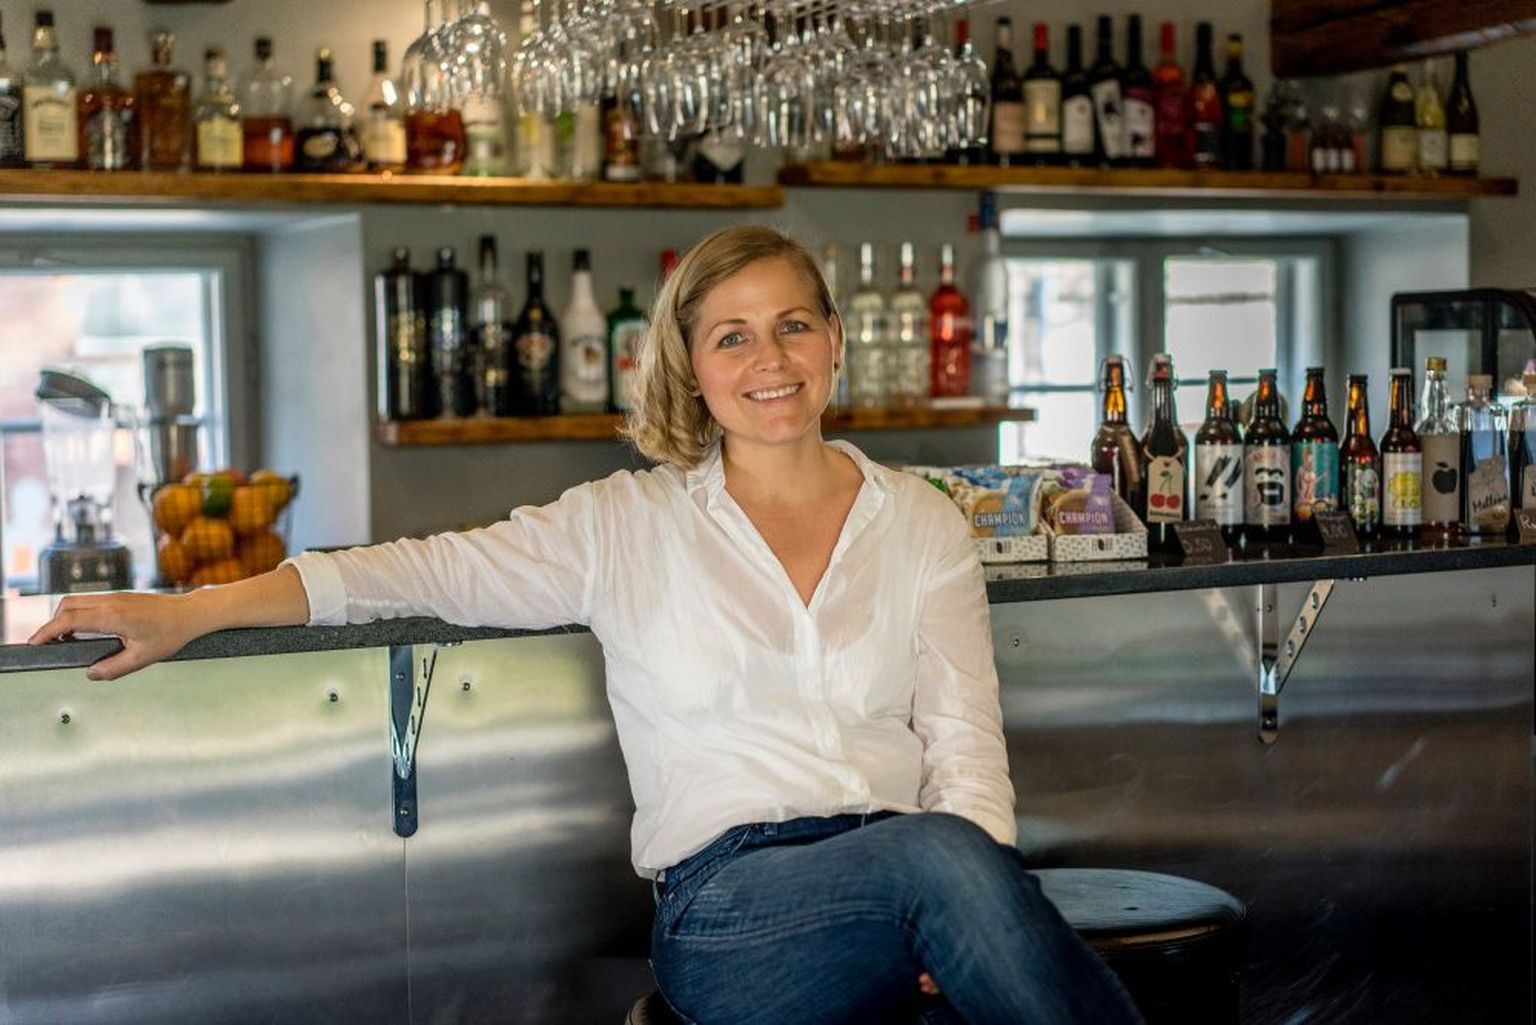 17 aastat välismaal elanud ja töötanud Lelde Strazdiņa naasis kodumaale ning töötab nüüd Cēsise linnas mööbli restauraatorina.